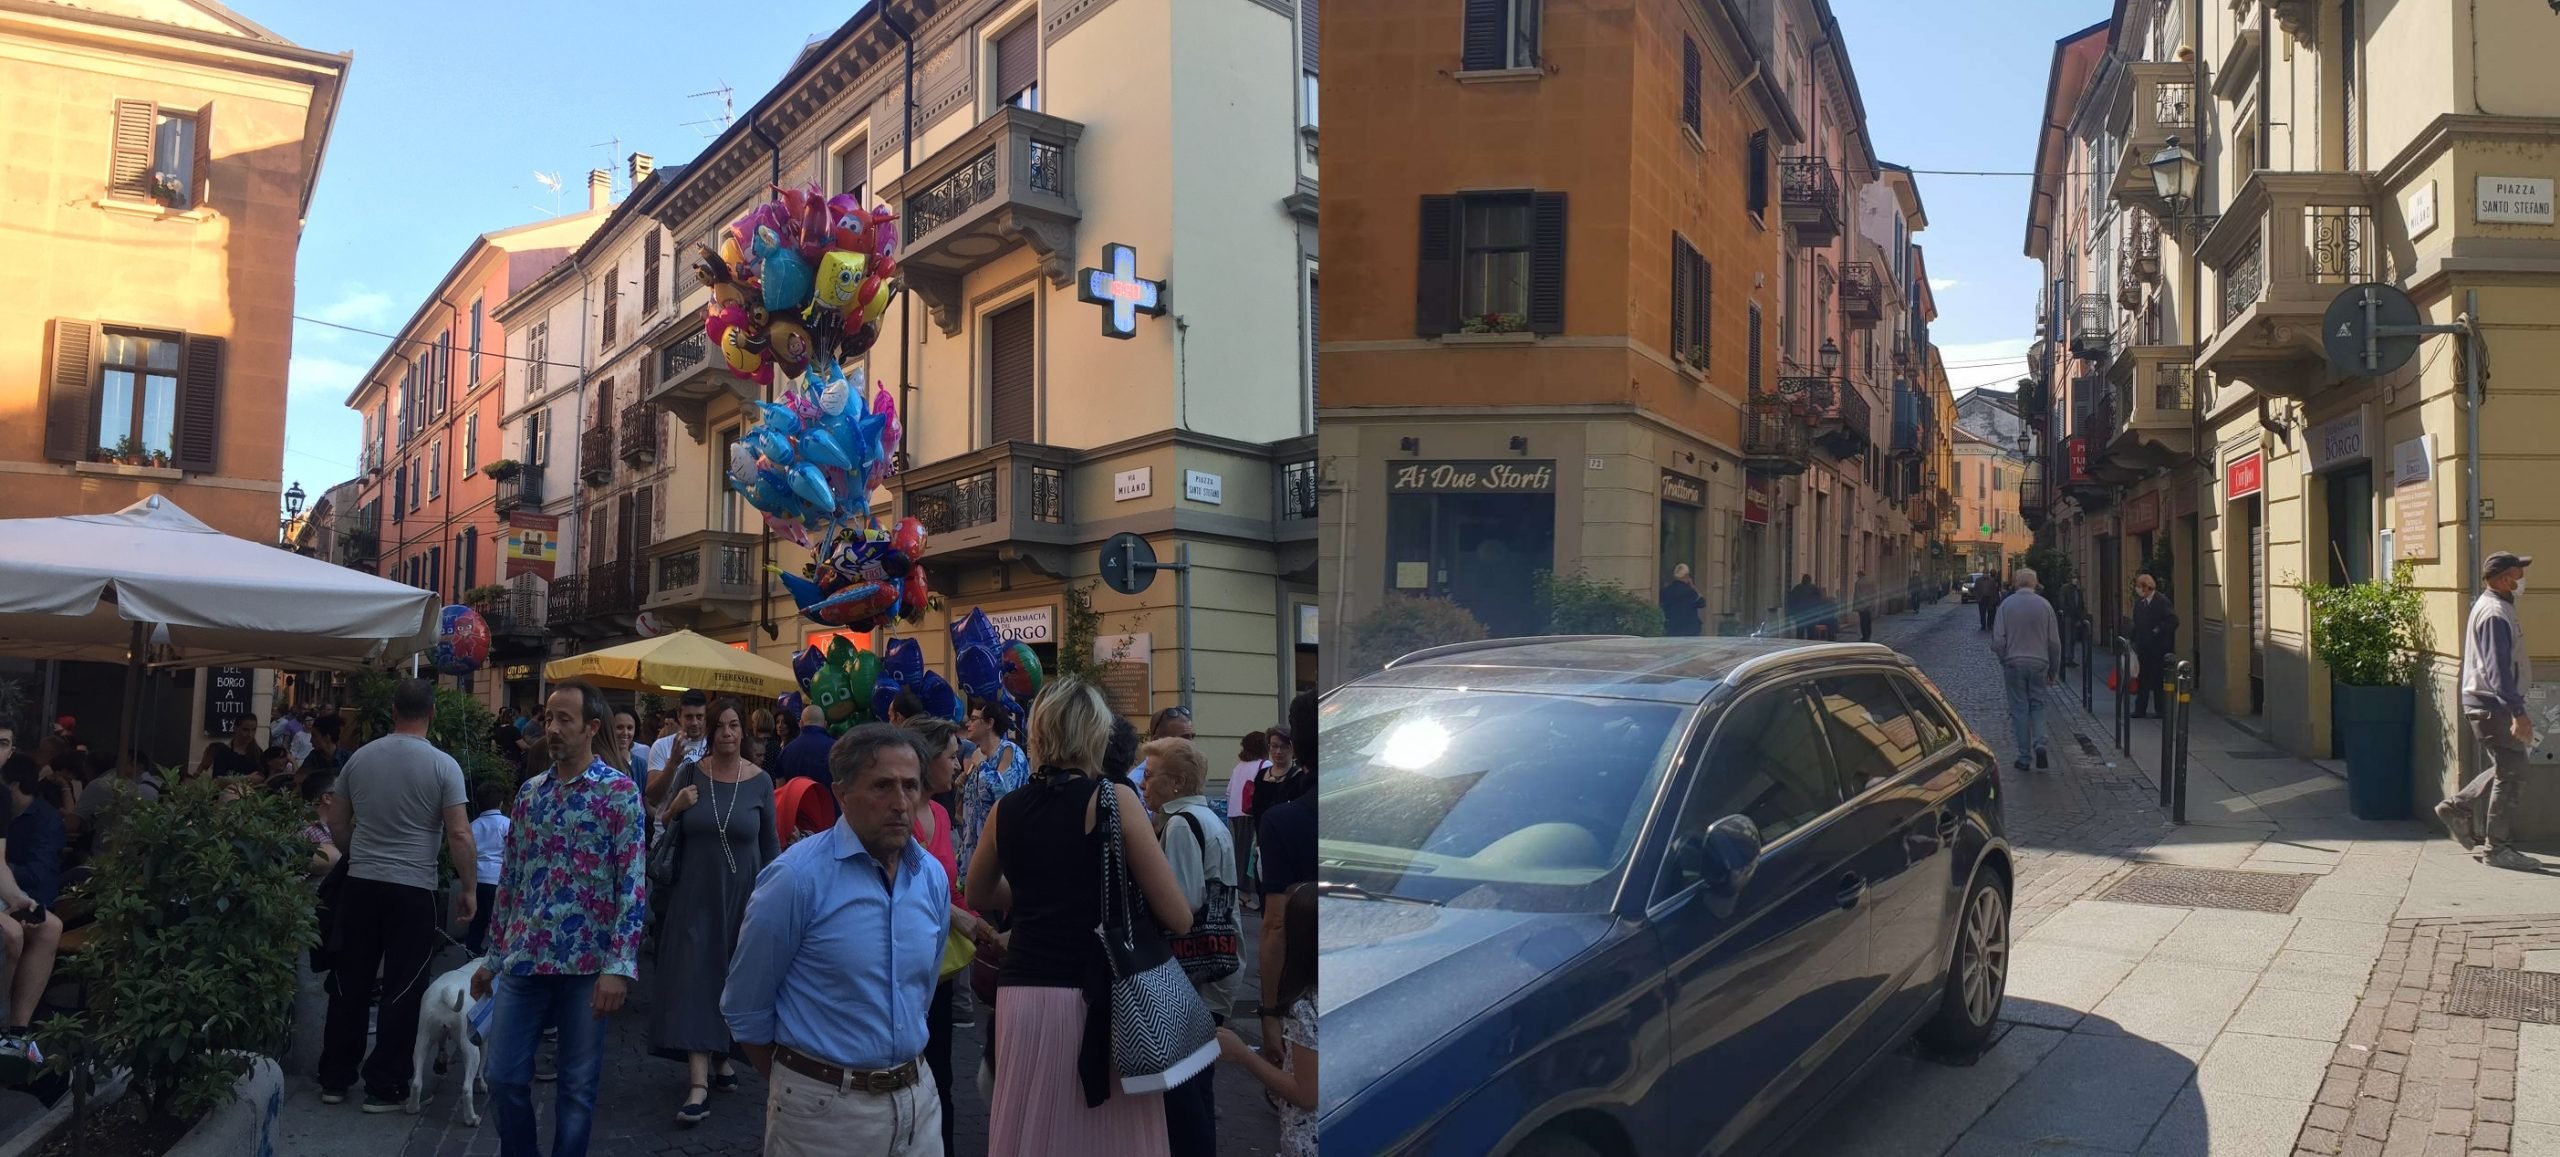 C’era una volta la Festa di Borgo Rovereto: com’era ieri e com’è oggi